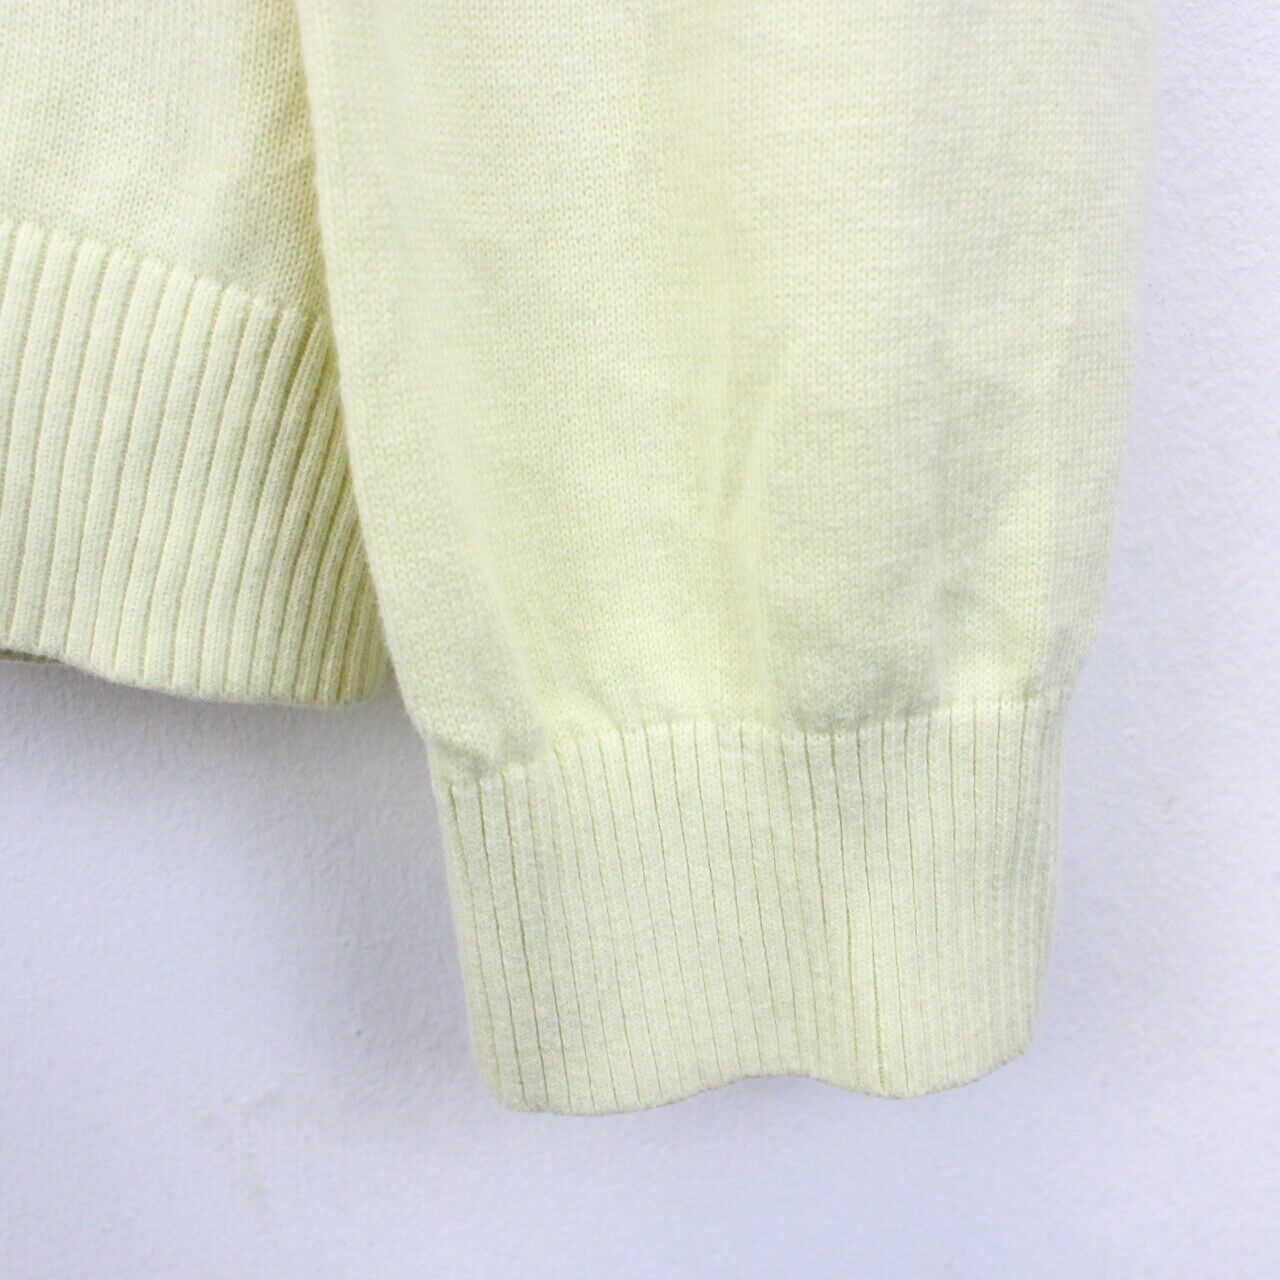 TOMMY HILFIGER Knit Sweatshirt Yellow | Large